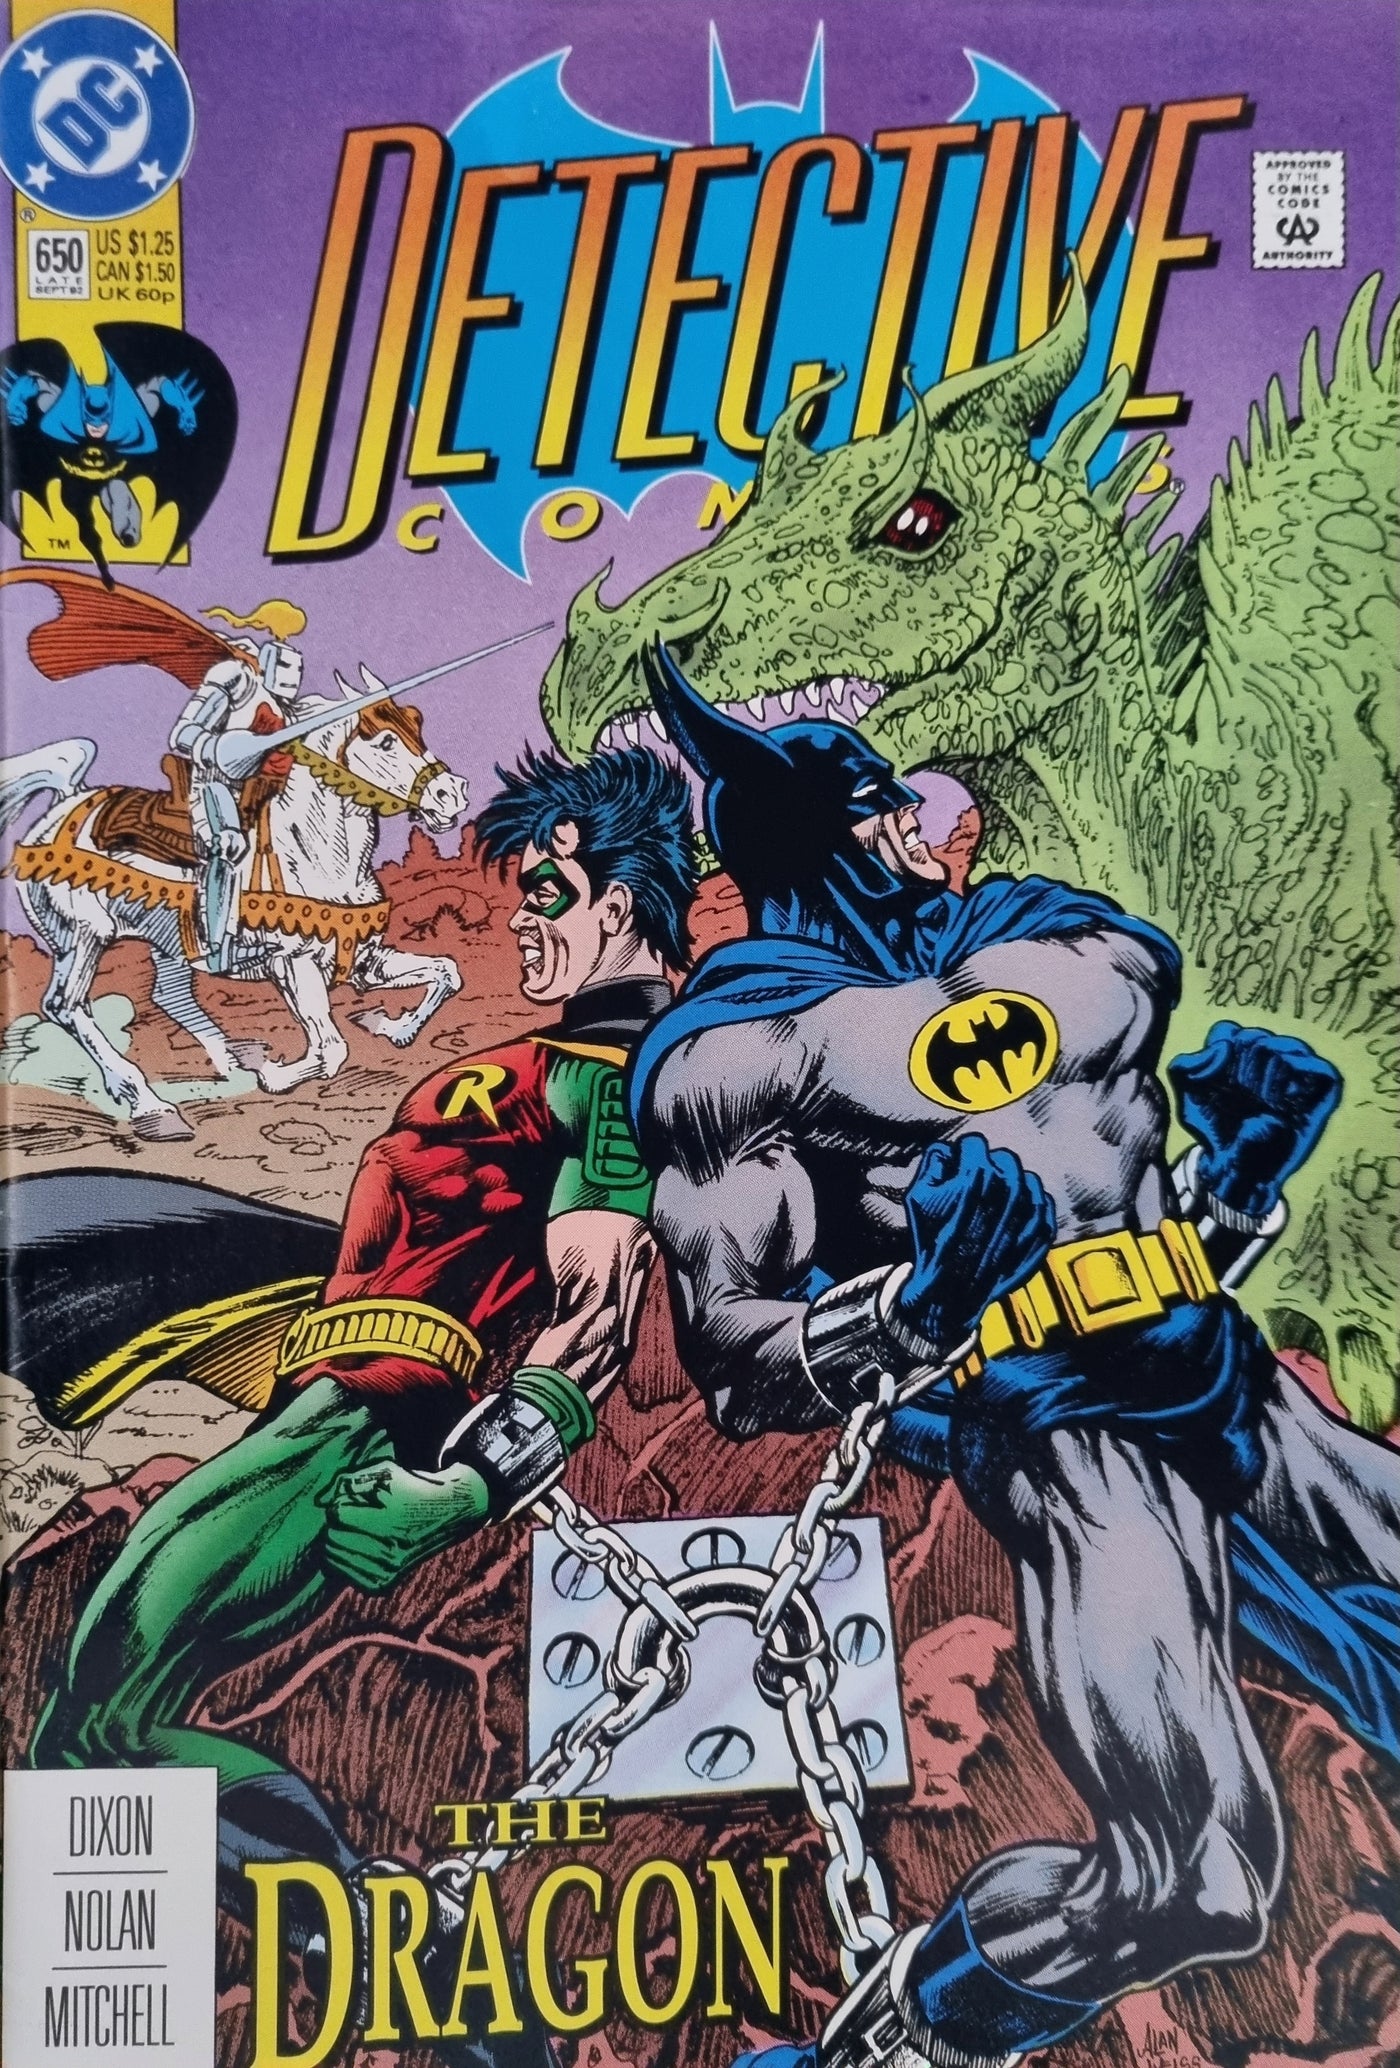 Detective Comics (Volume 1) #650